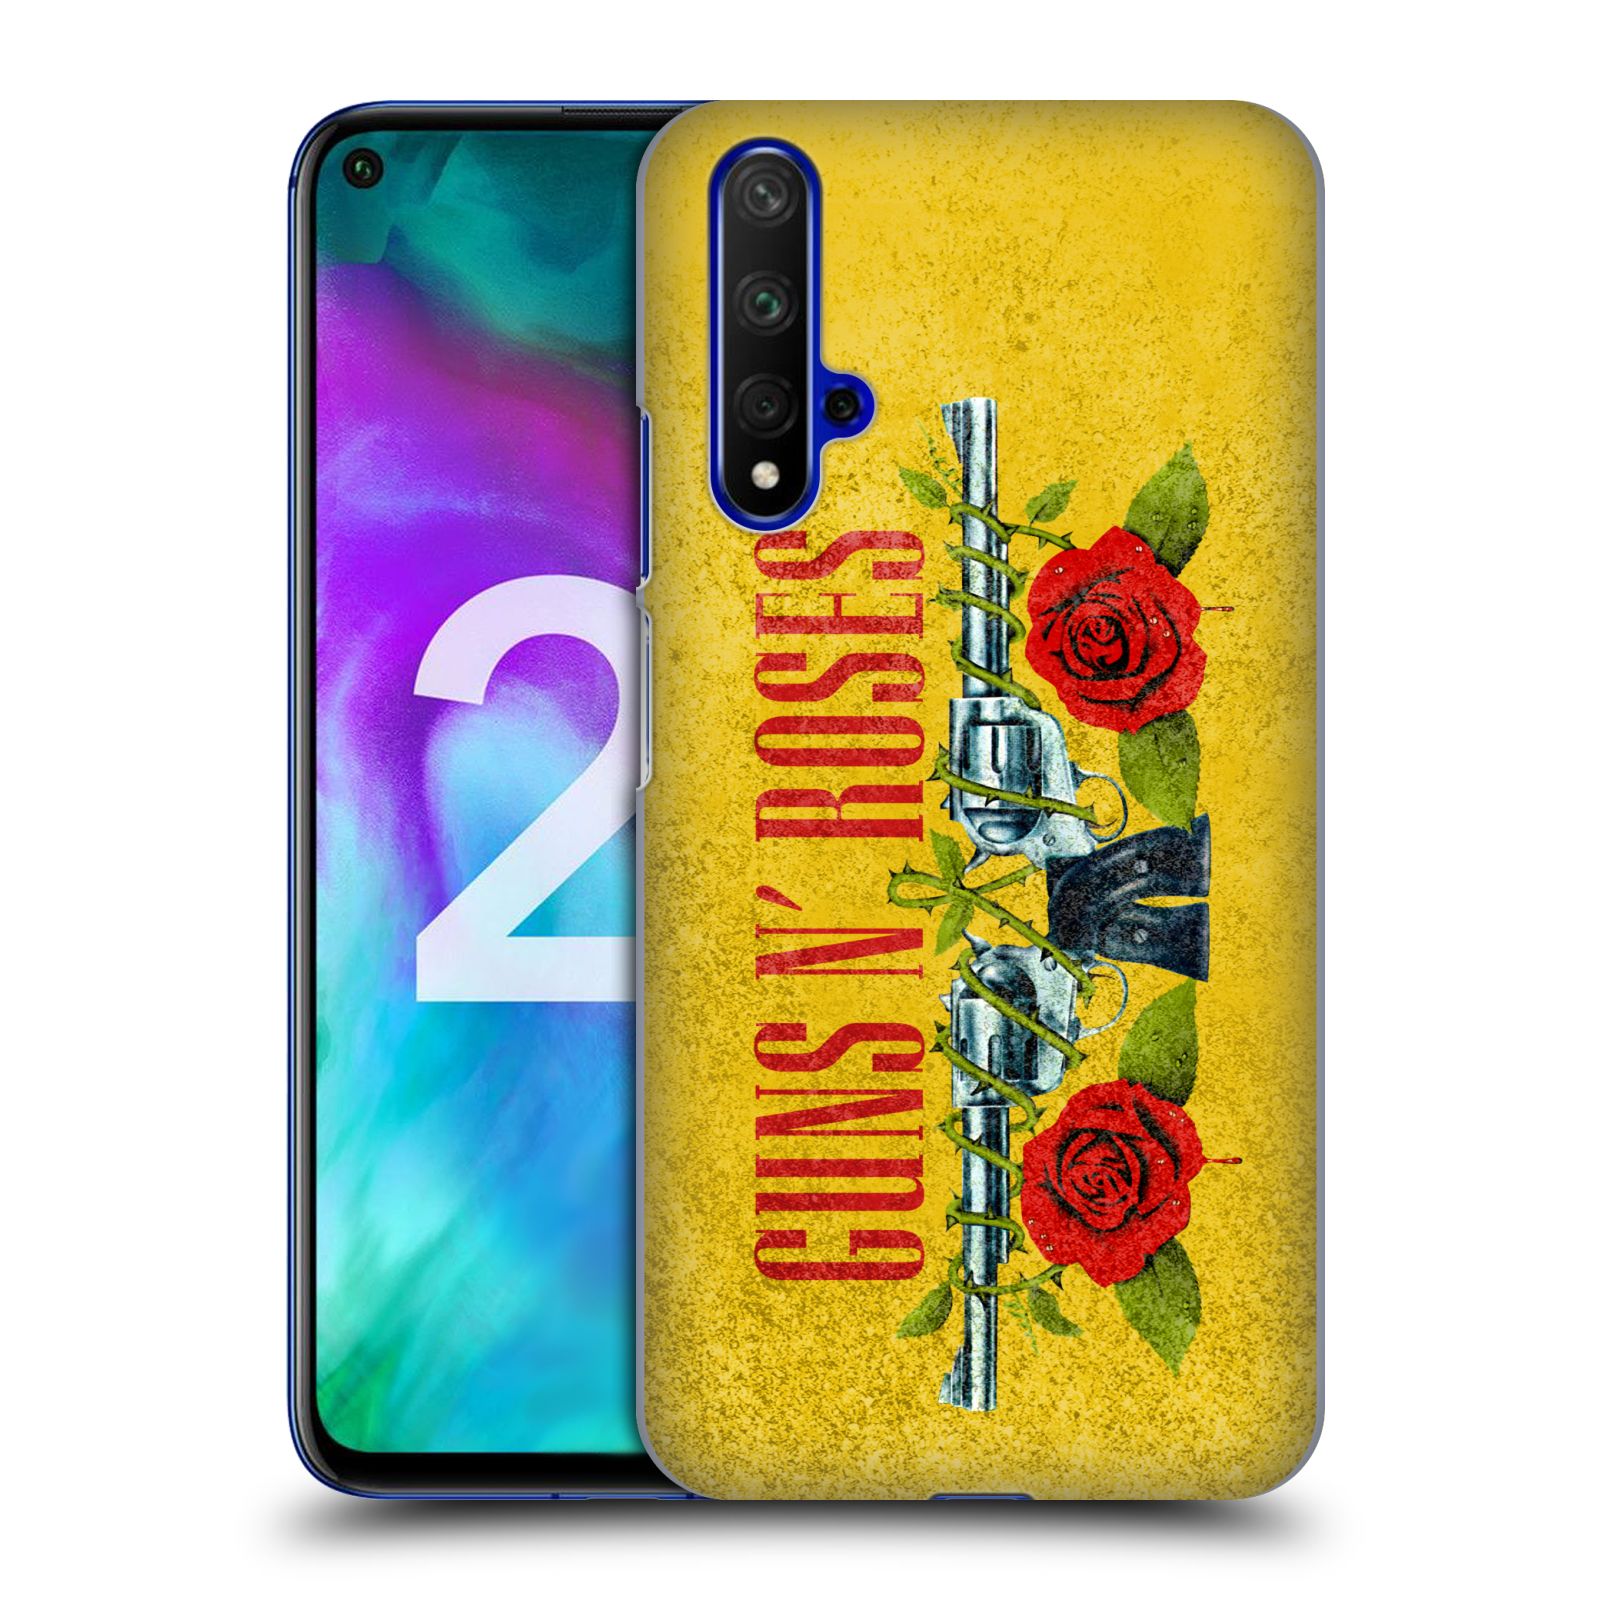 Pouzdro na mobil Honor 20 - HEAD CASE - hudební skupina Guns N Roses pistole a růže žluté pozadí